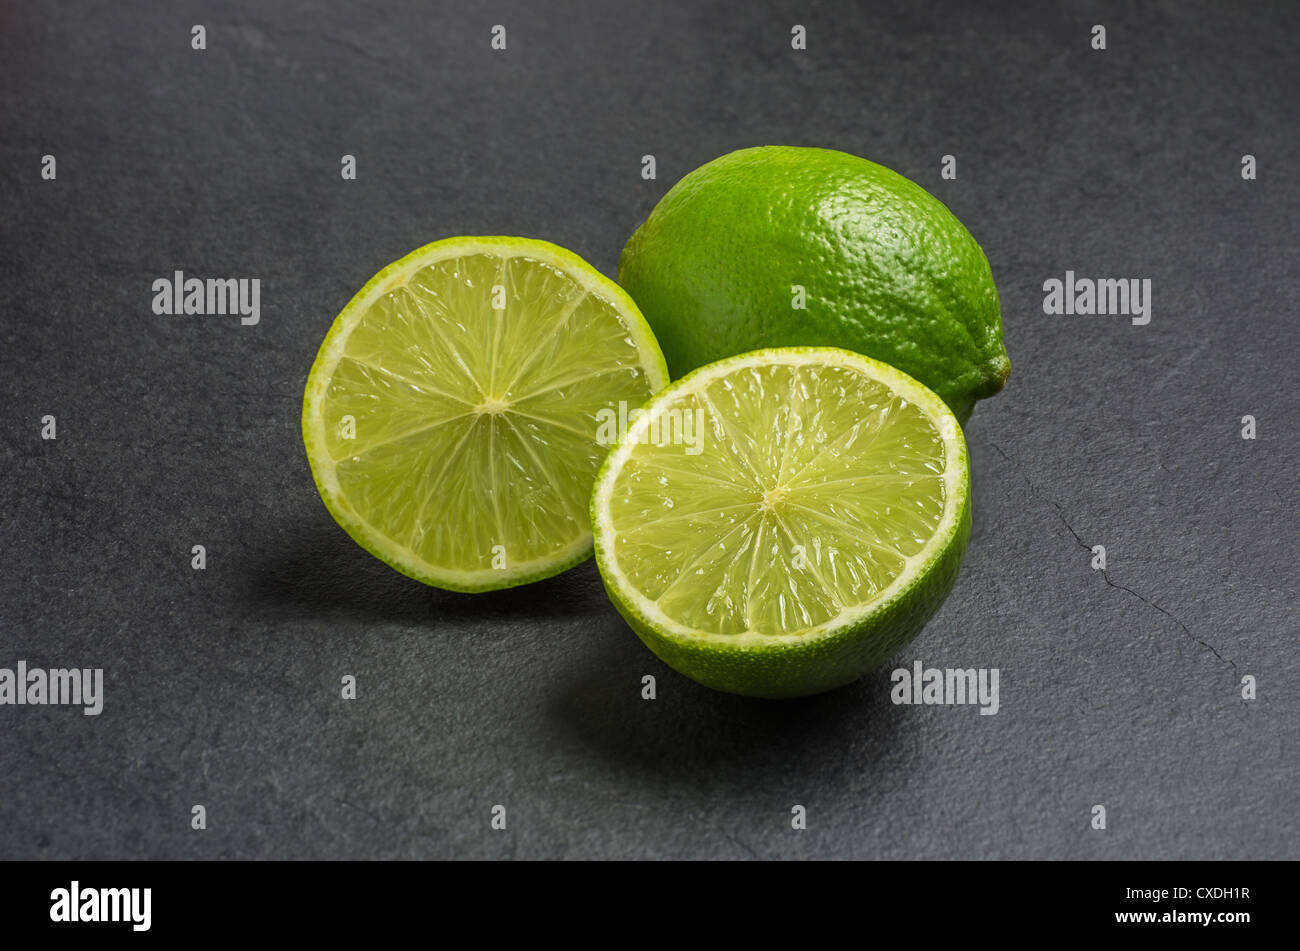 limes on slate plate Stock Photo